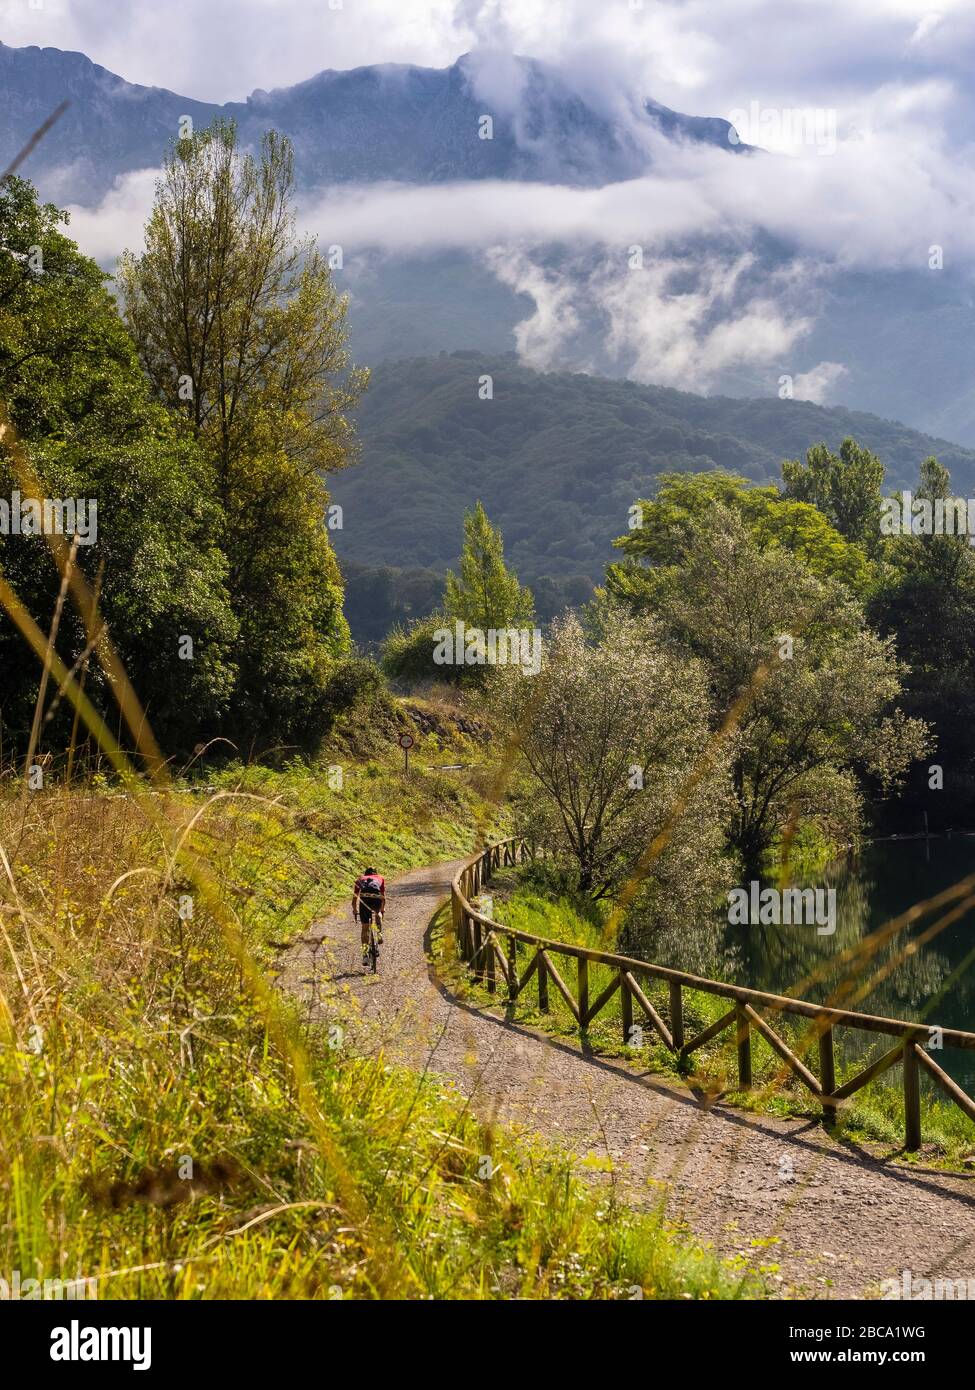 Straßenradsport in Asturien, Nordspanien. Rennradrennfahrer auf dem See "Embalse de Valdemurrio" in den Bergen in der Nähe von Proaza Principado de Asturias, Spa Stockfoto